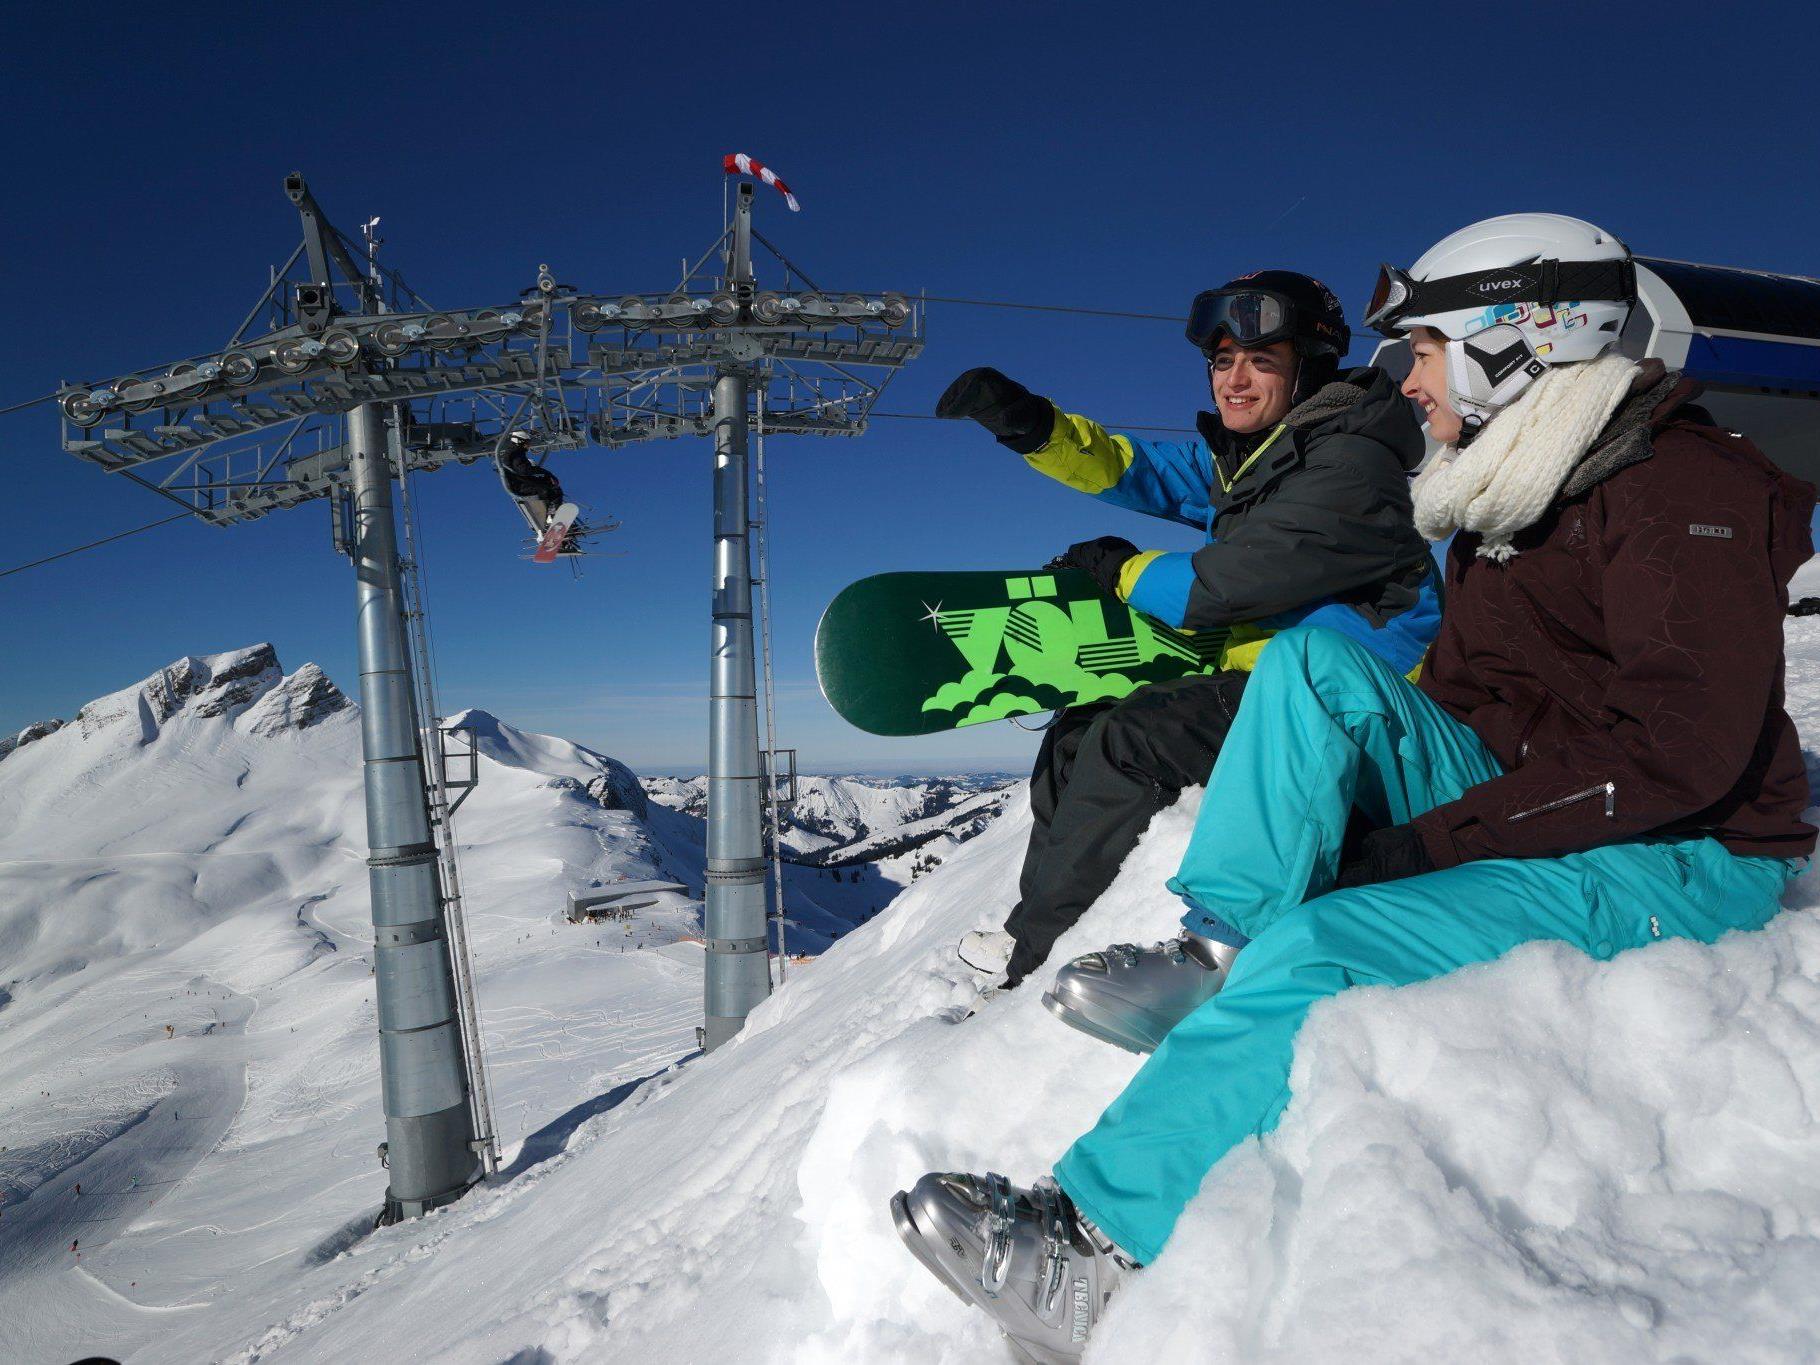 Die Einheimischen-Tarife in Vorarlbergs Skigebieten bröckeln. Grund ist eine unsichere Rechtslage.